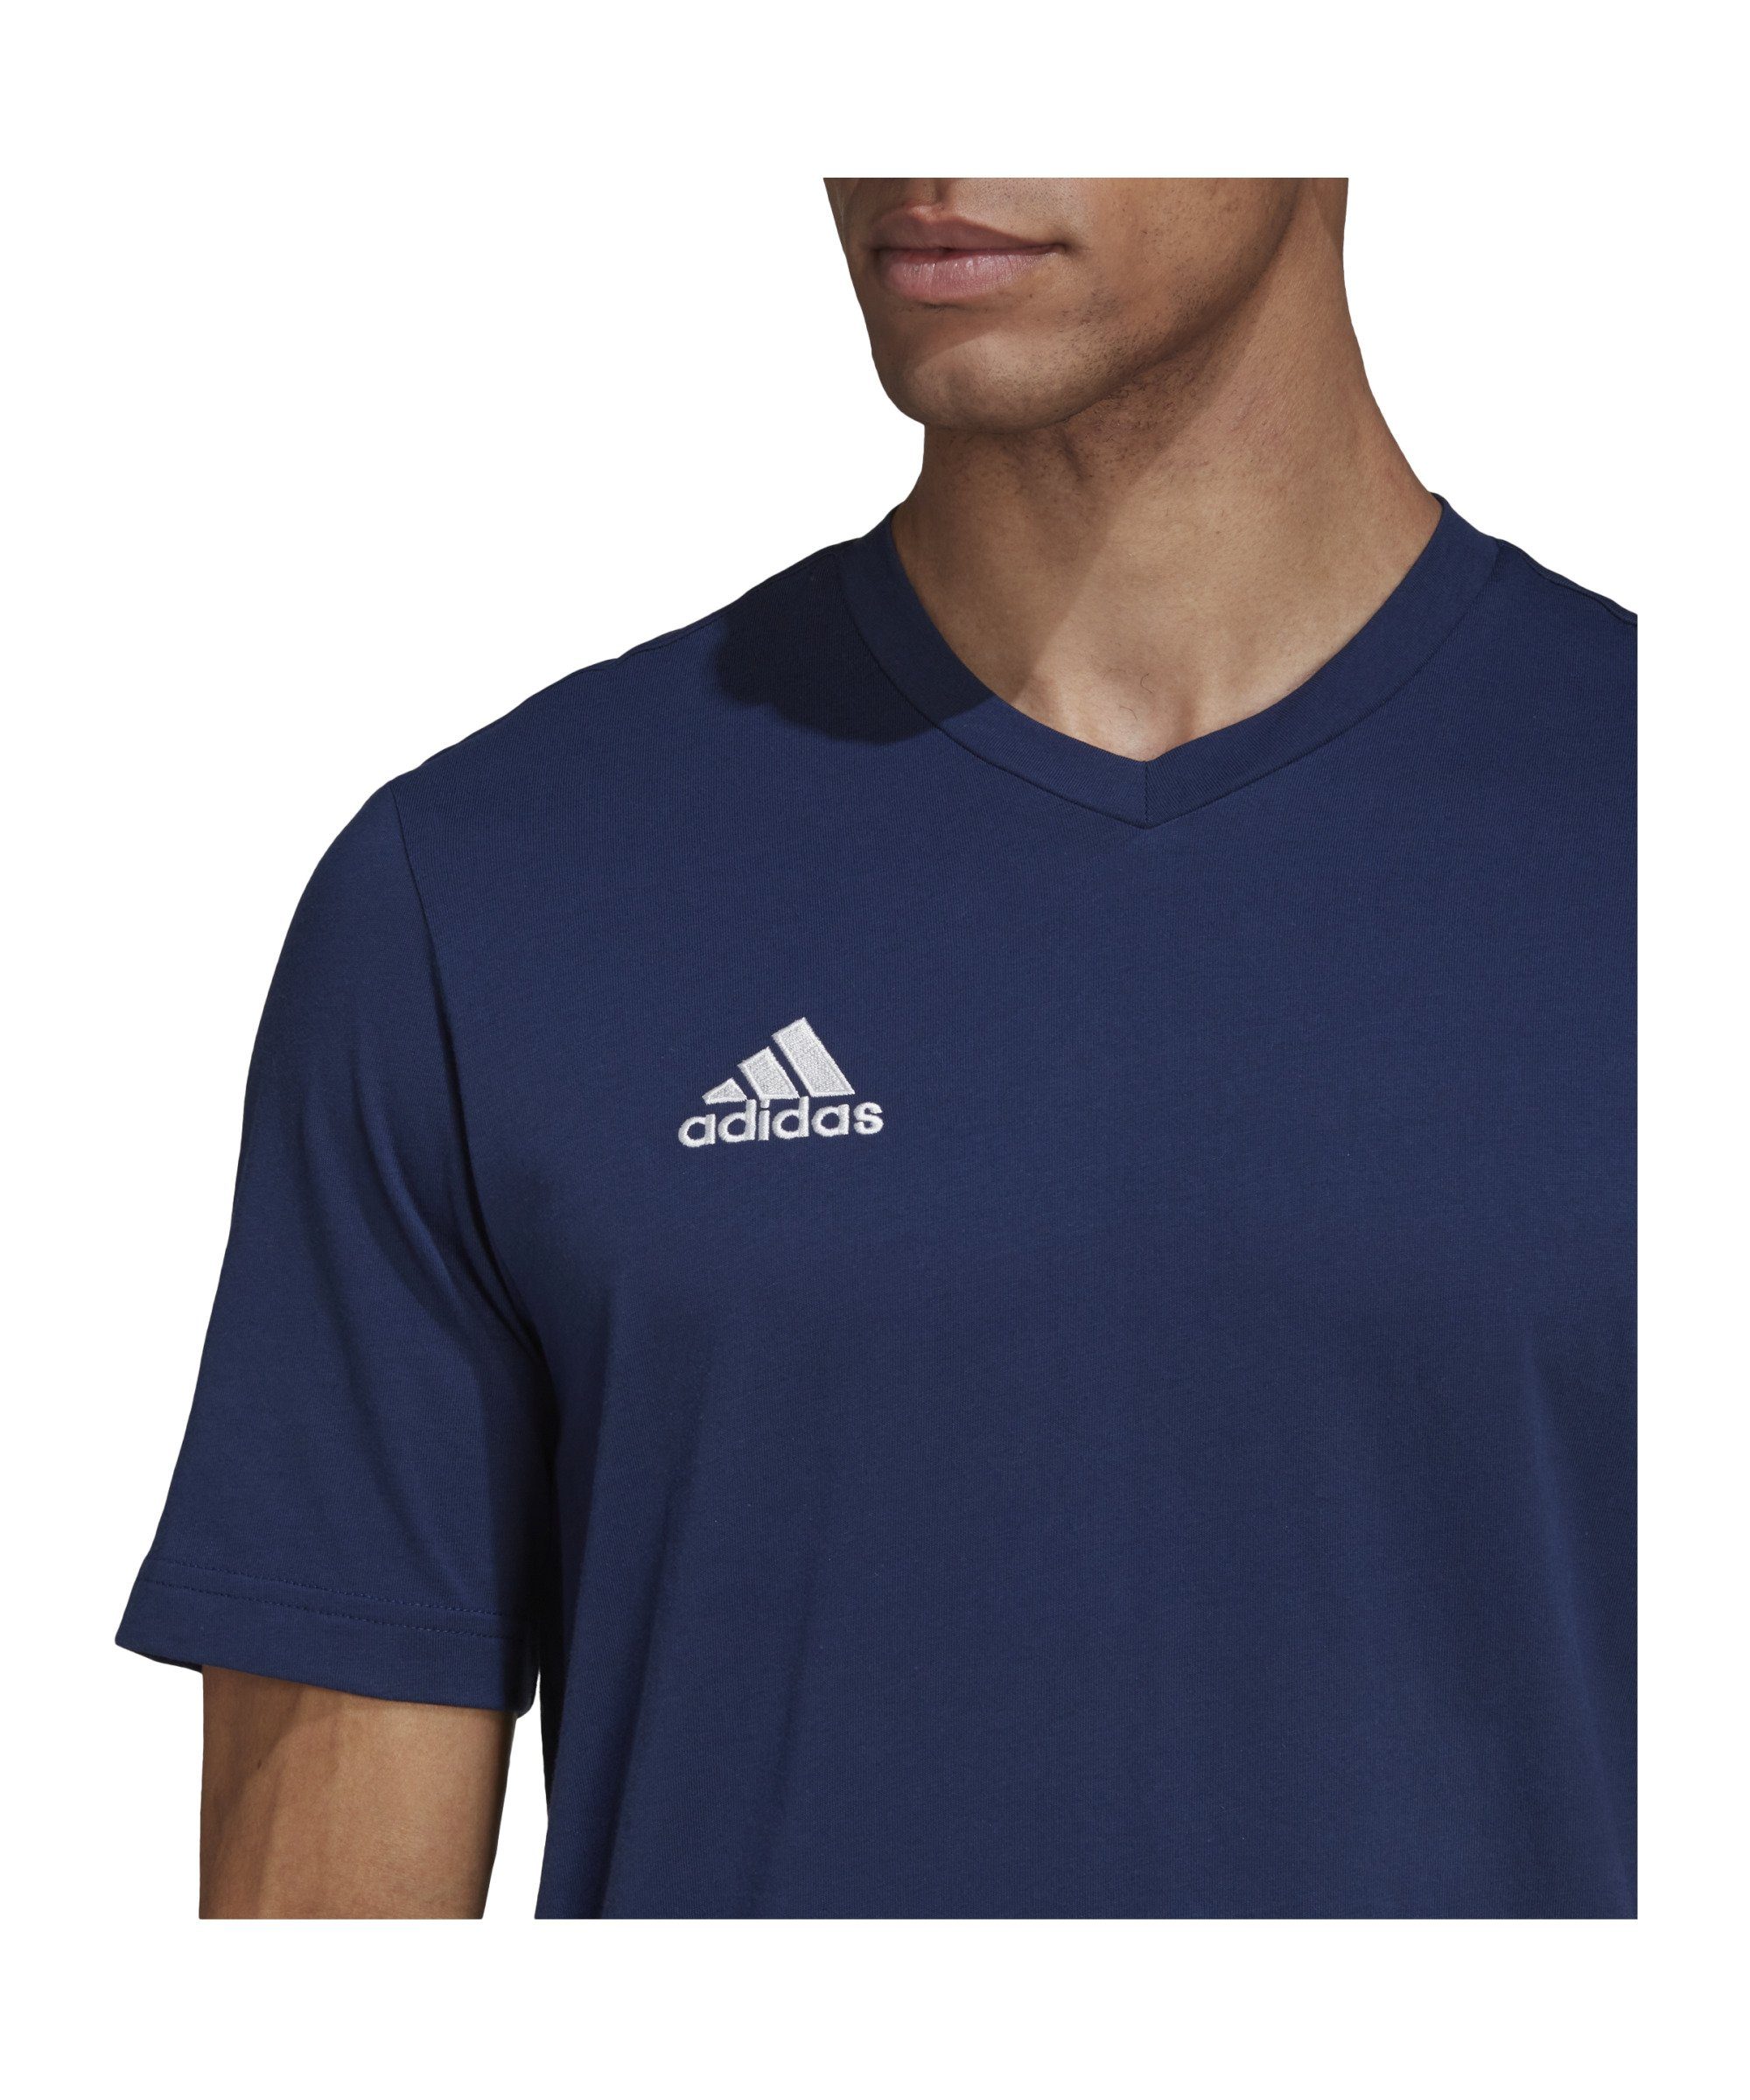 T-Shirt Performance adidas 22 Entrada default T-Shirt blau